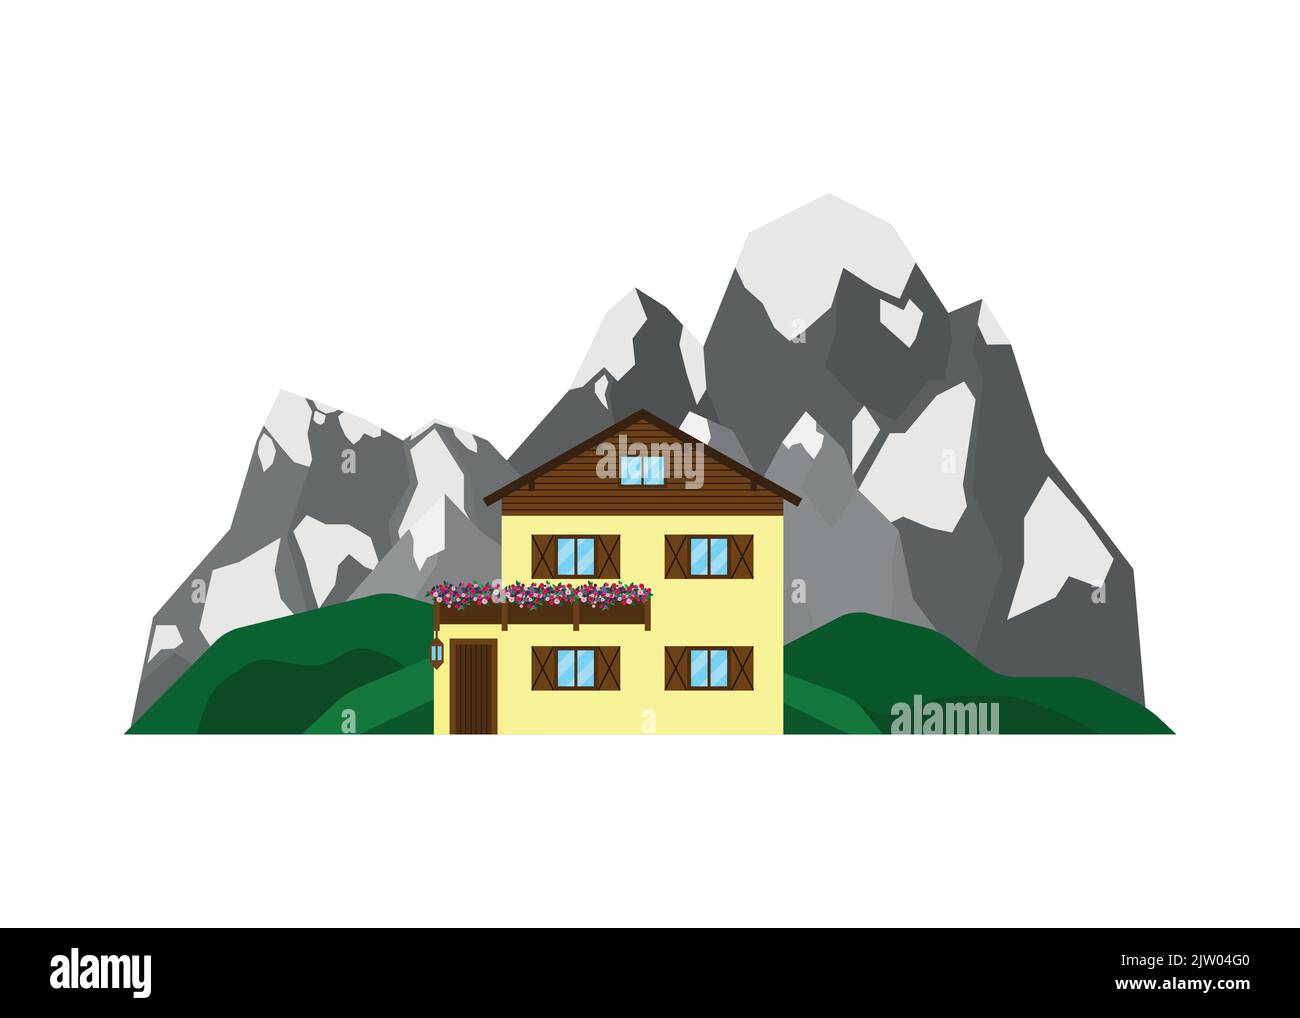 Maison ou chalet privé sur le paysage avec des montagnes alpines et des collines verdoyantes dans un style plat isolé sur fond blanc. Illustration de Vecteur